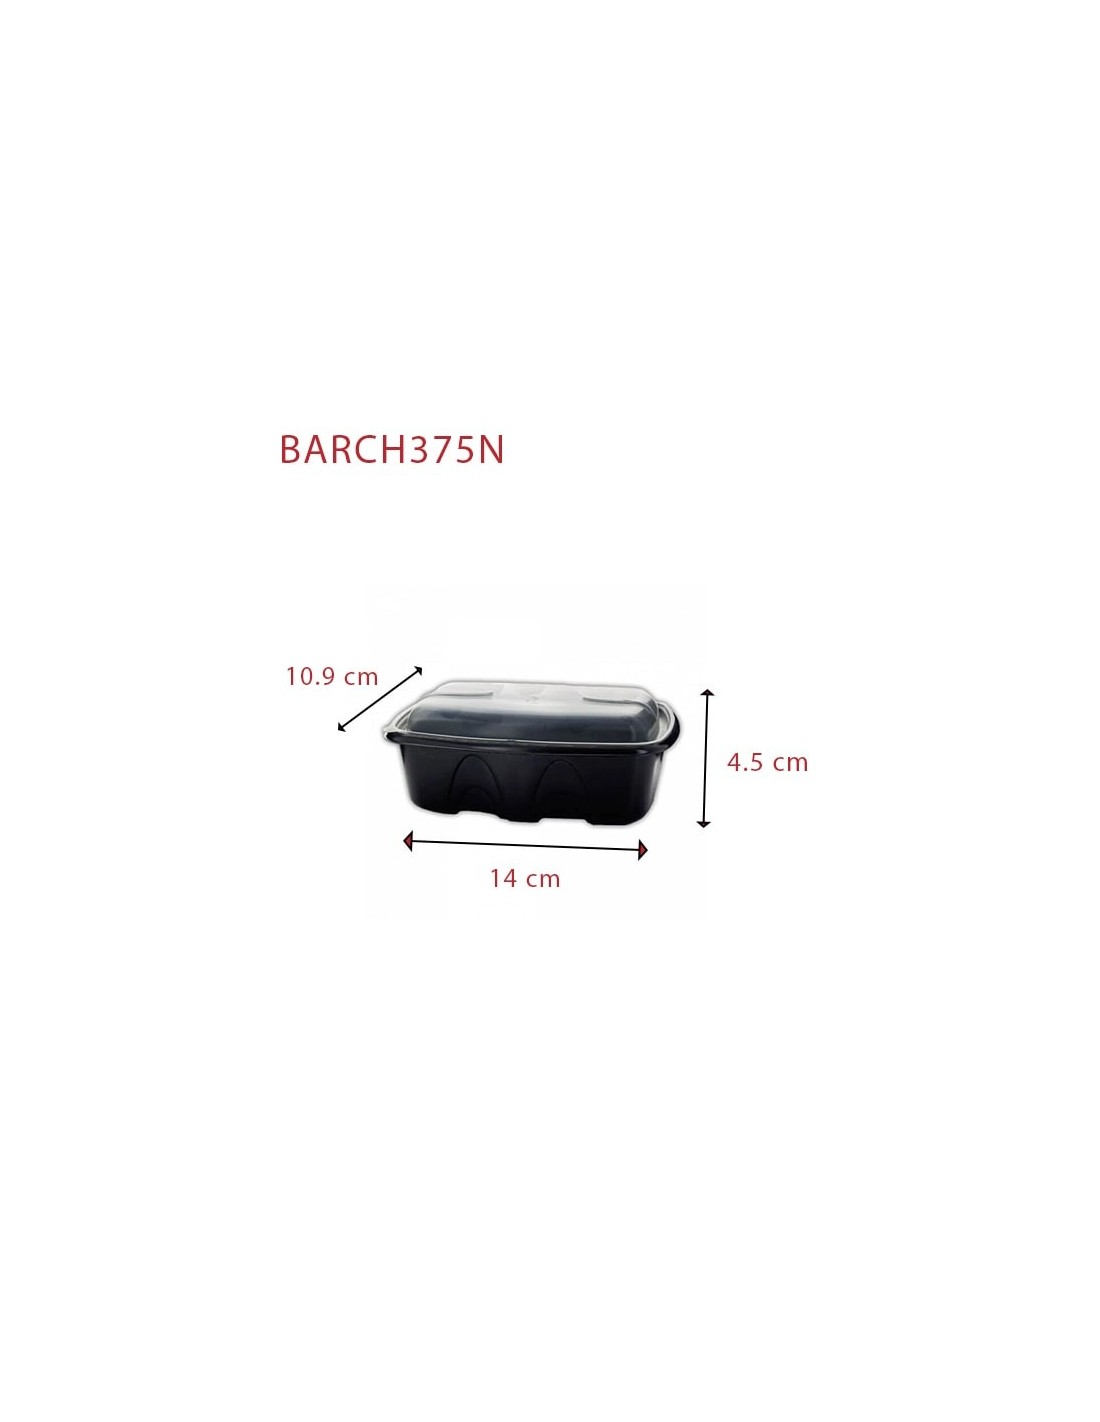 Barquette Plastique Archipack noire + couvercle